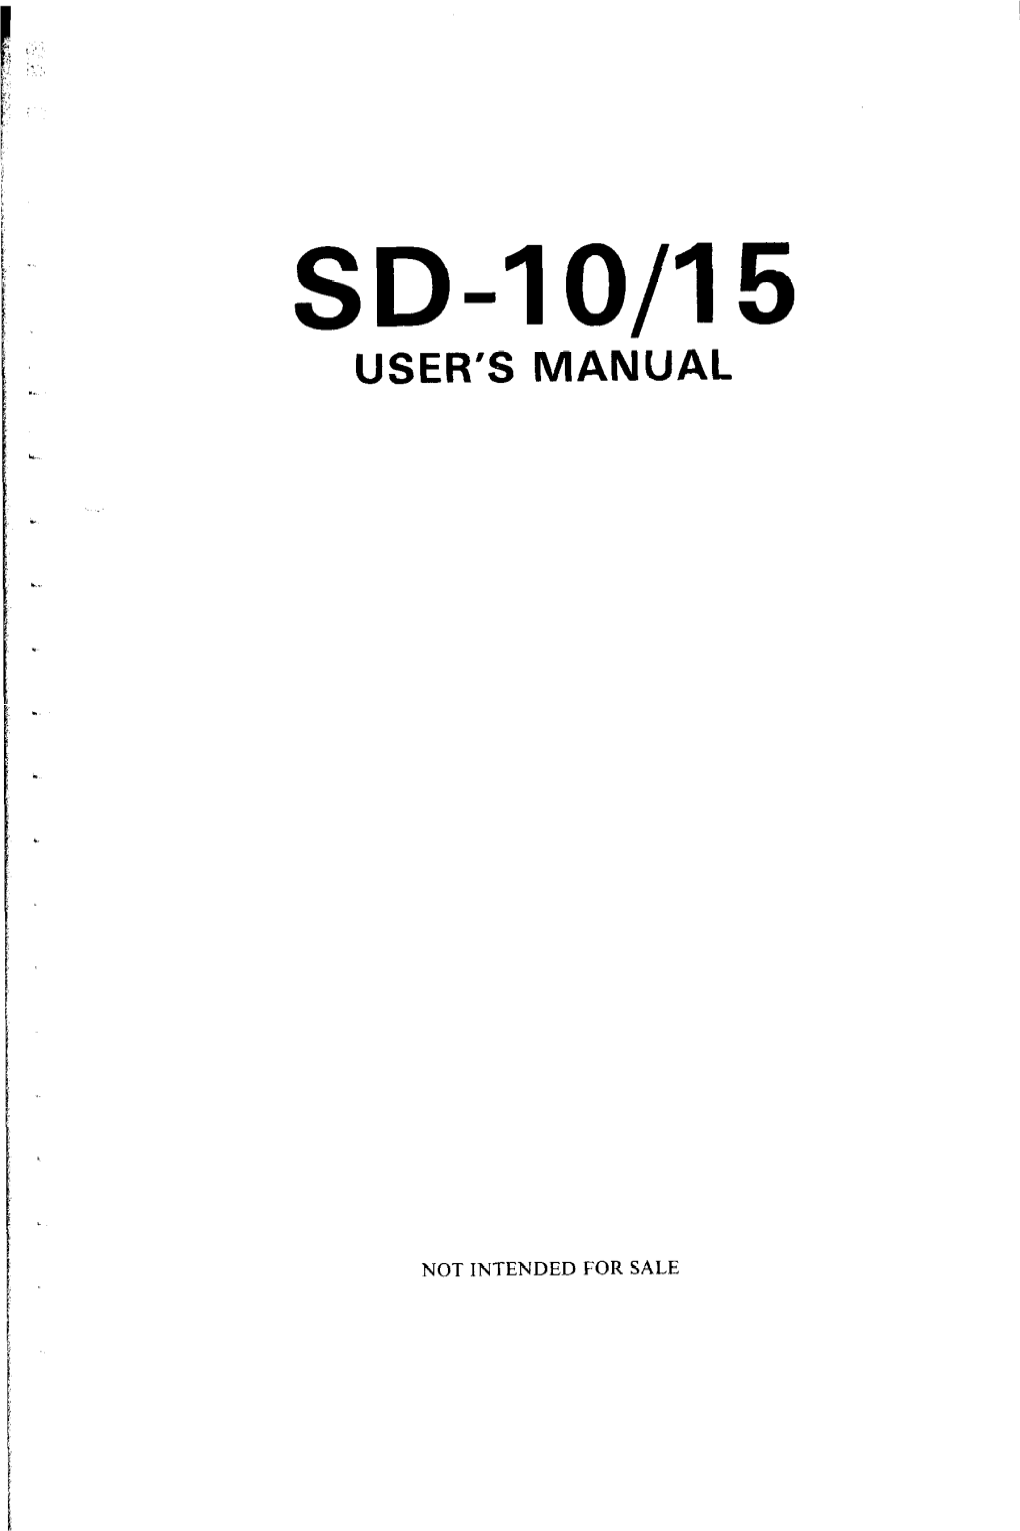 Sd-10/15 User's Manual